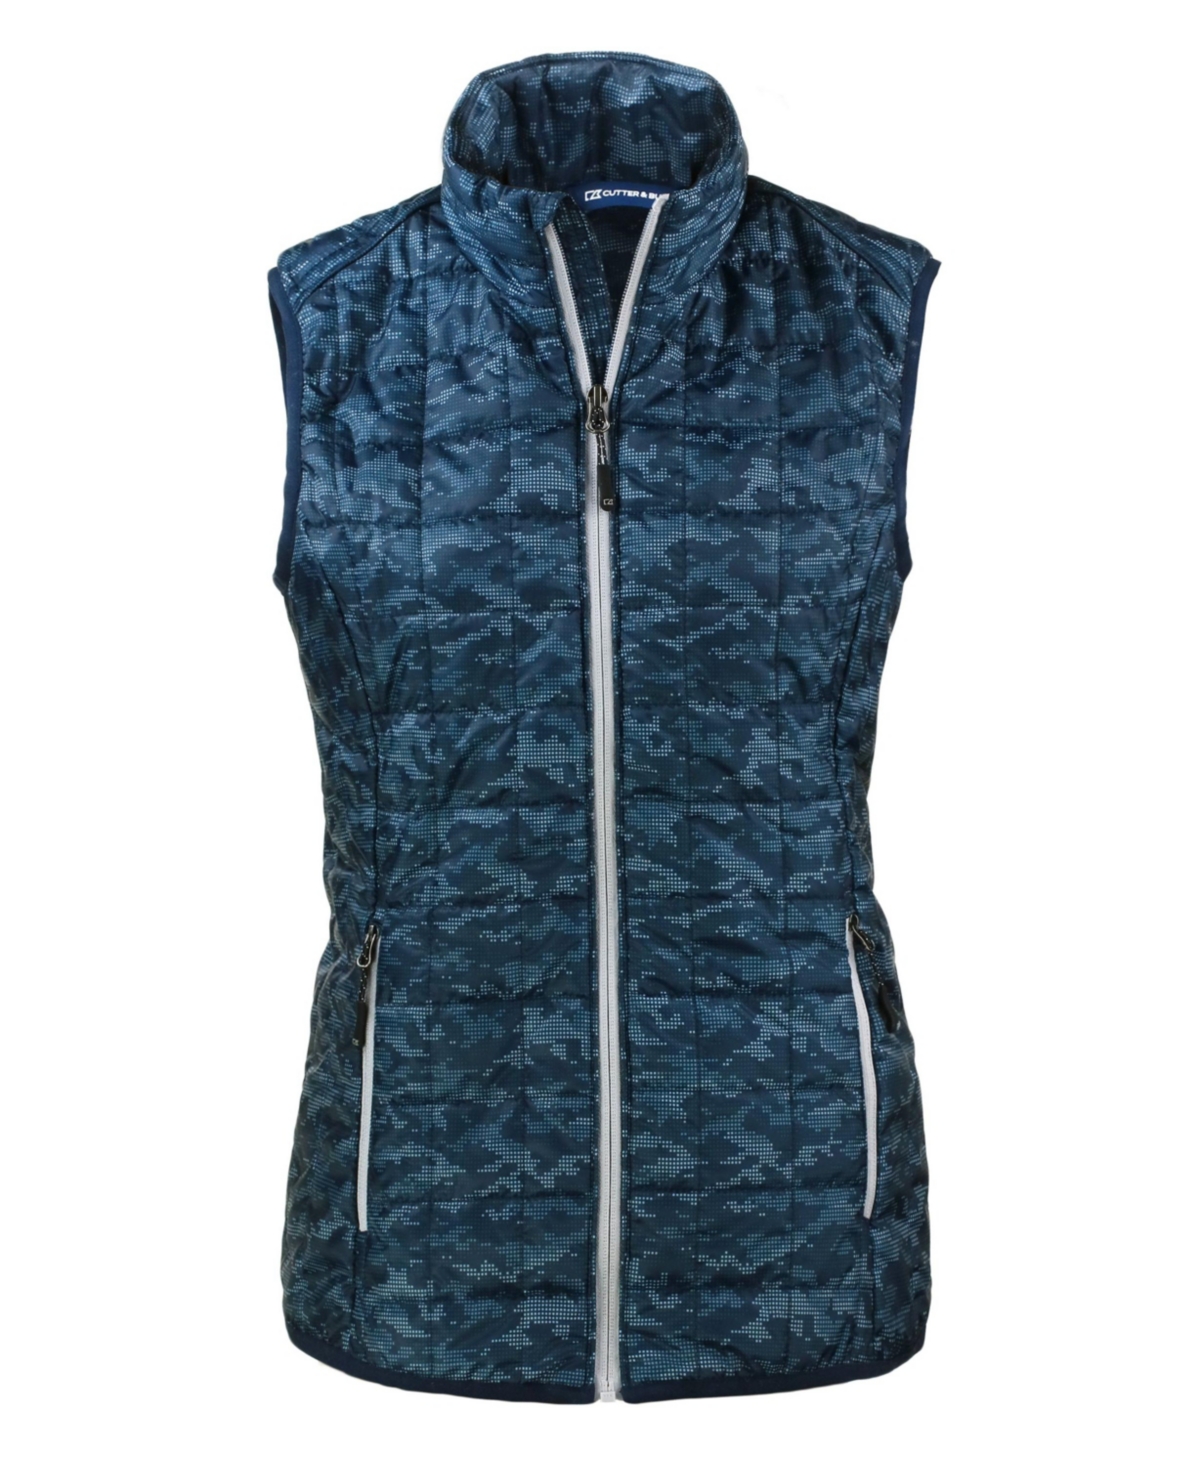 Women's Rainier PrimaLoft Eco Insulated Full Zip Printed Puffer Vest - Dark navy